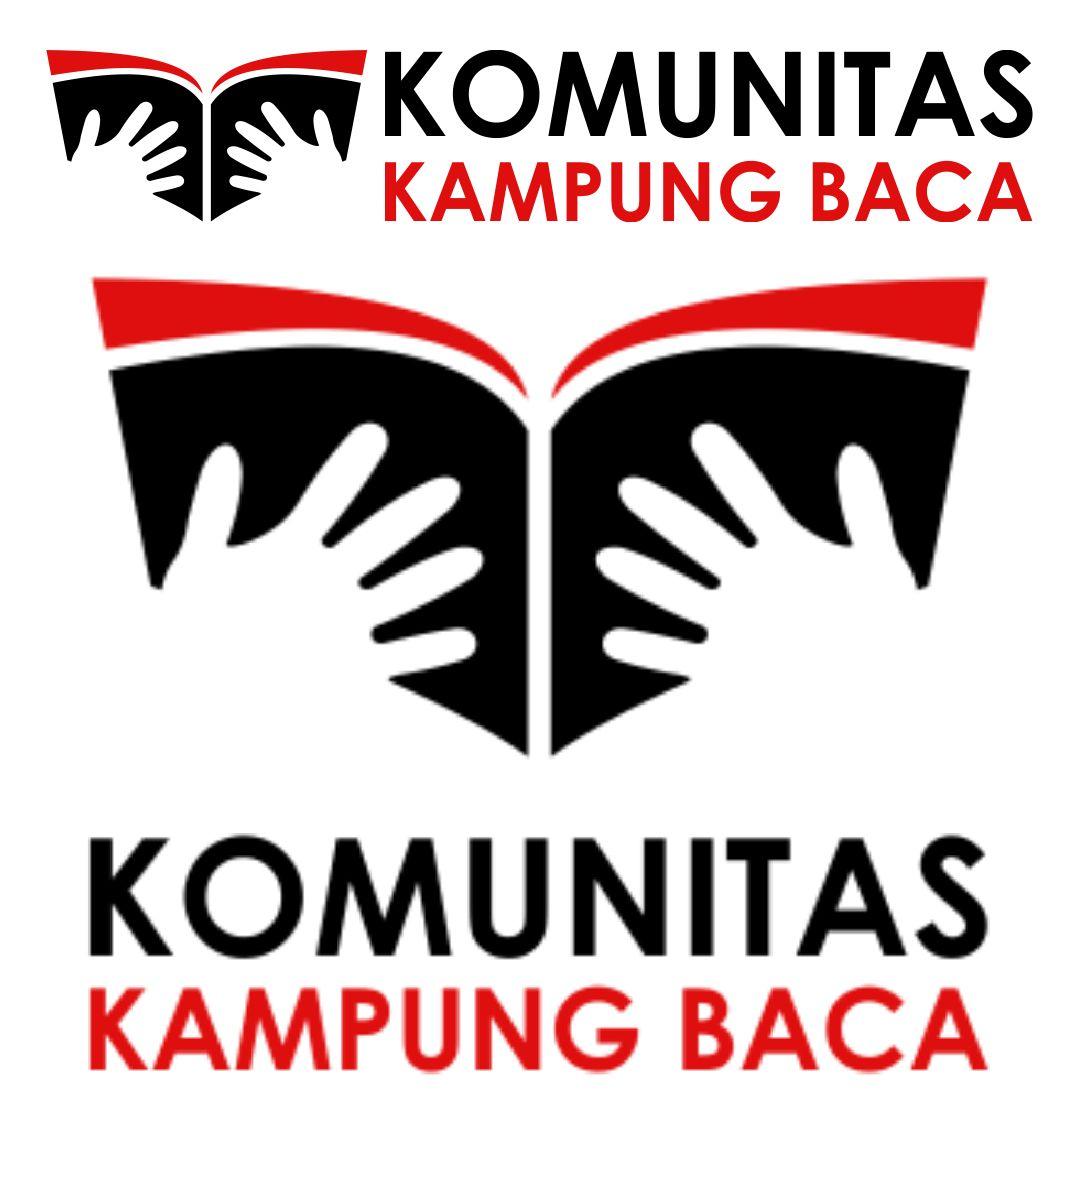 Baca Logo - Logo Komunitas Kampung Baca (REVISI)